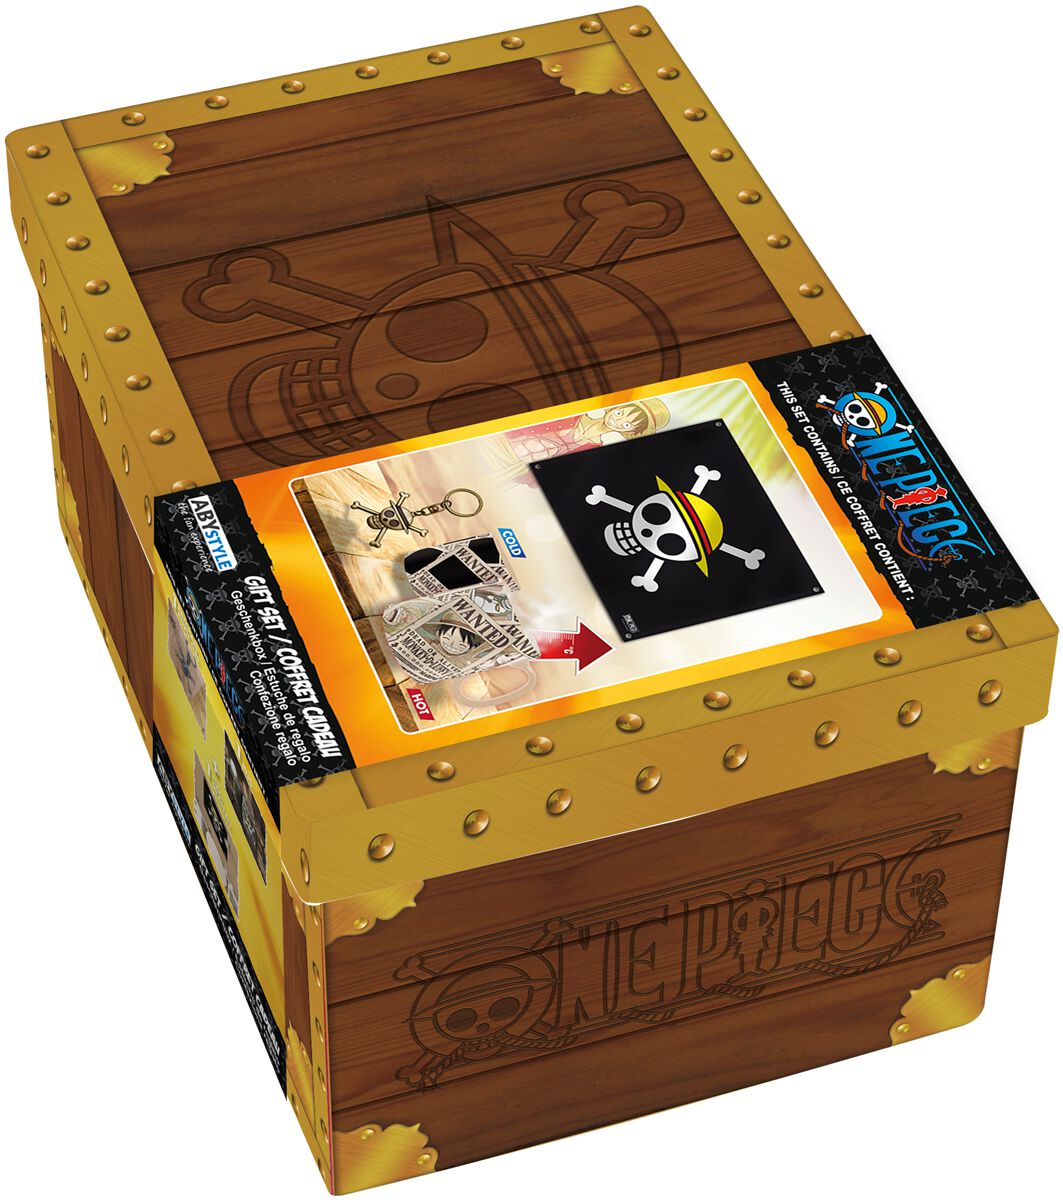 Coffret Cadeau Premium, One Piece Fan Package